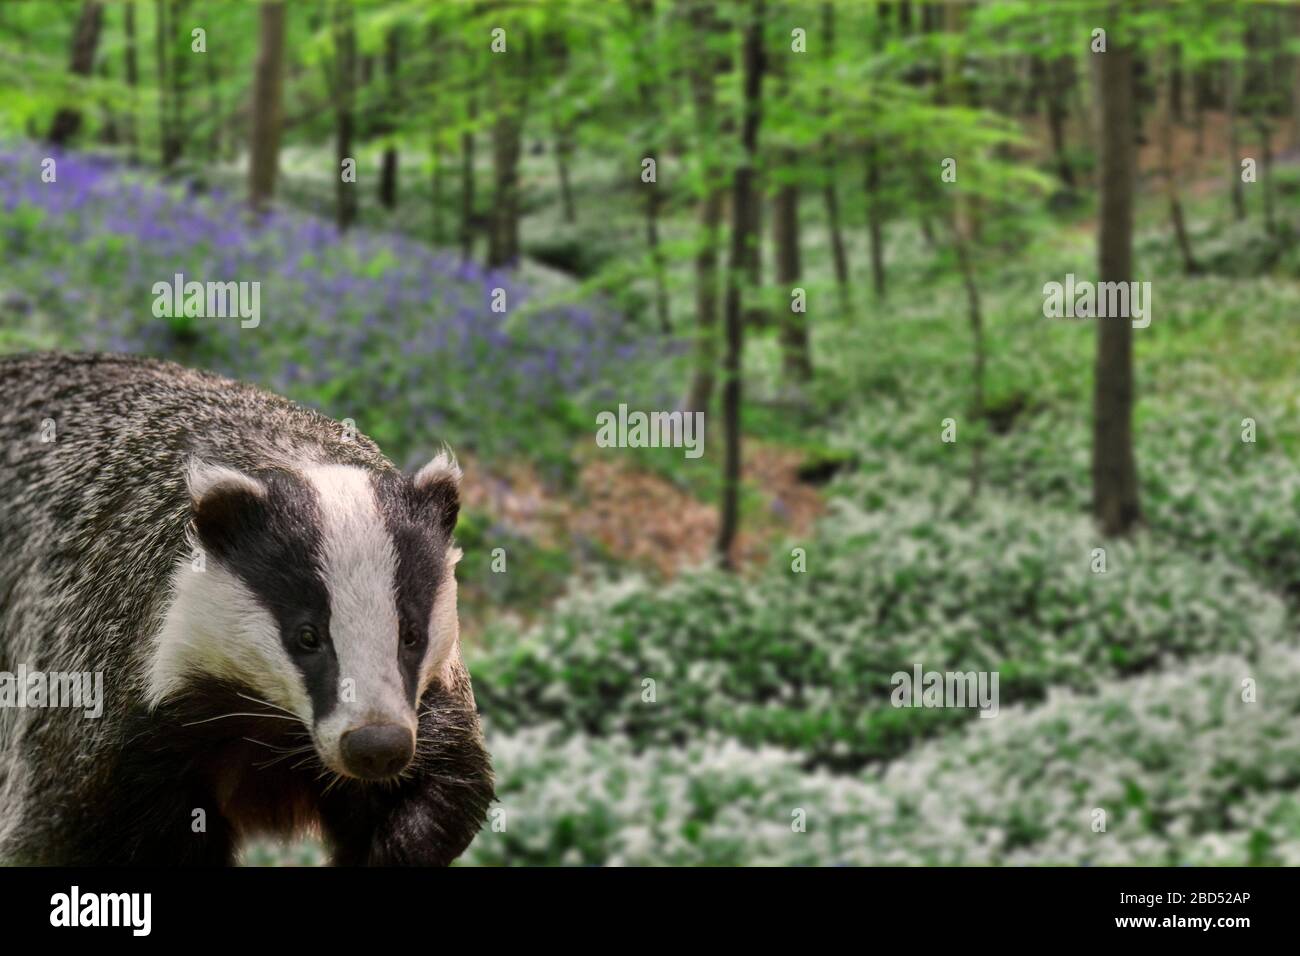 Europäischer Dachs (Meles meles), der im Frühjahr im Buchenwald mit Bläuzchen und wildem Knoblauch in Blumen wütet. Digitale Verbundwerkstoffe Stockfoto